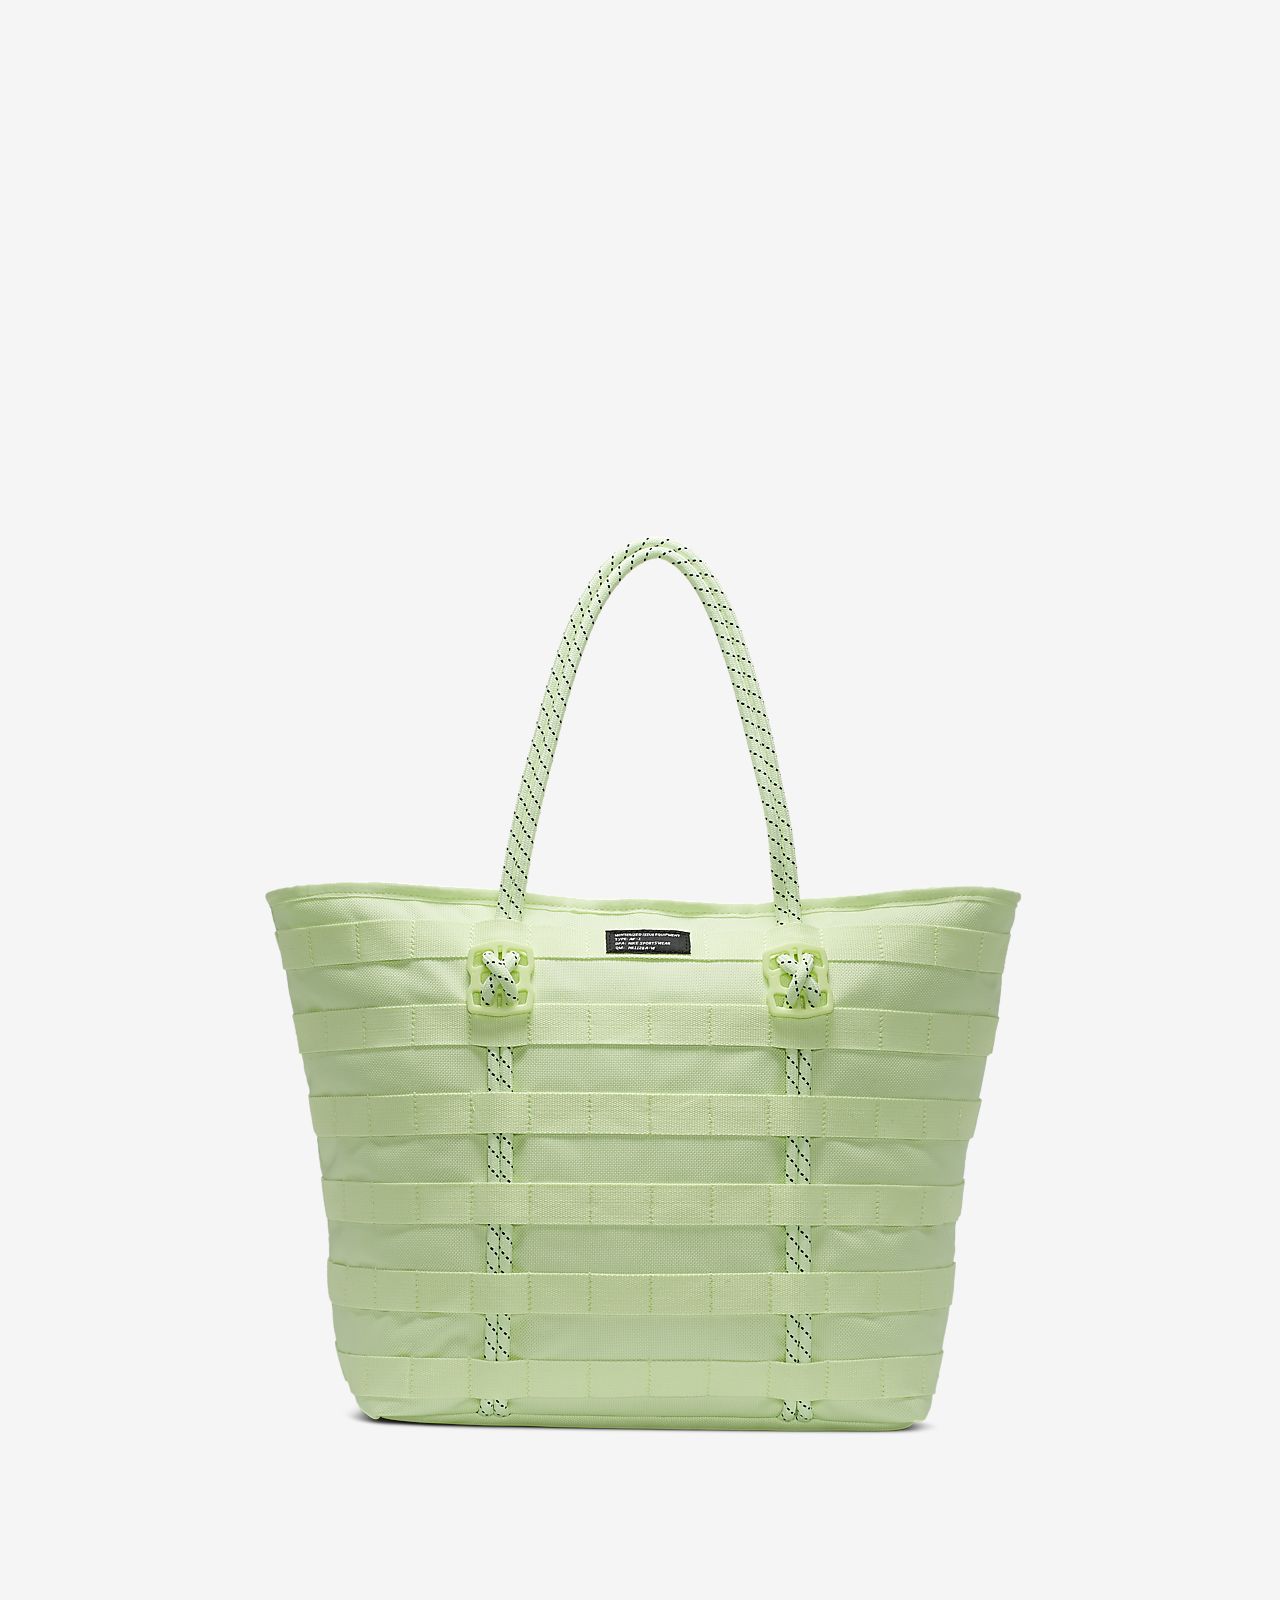 green nike bag